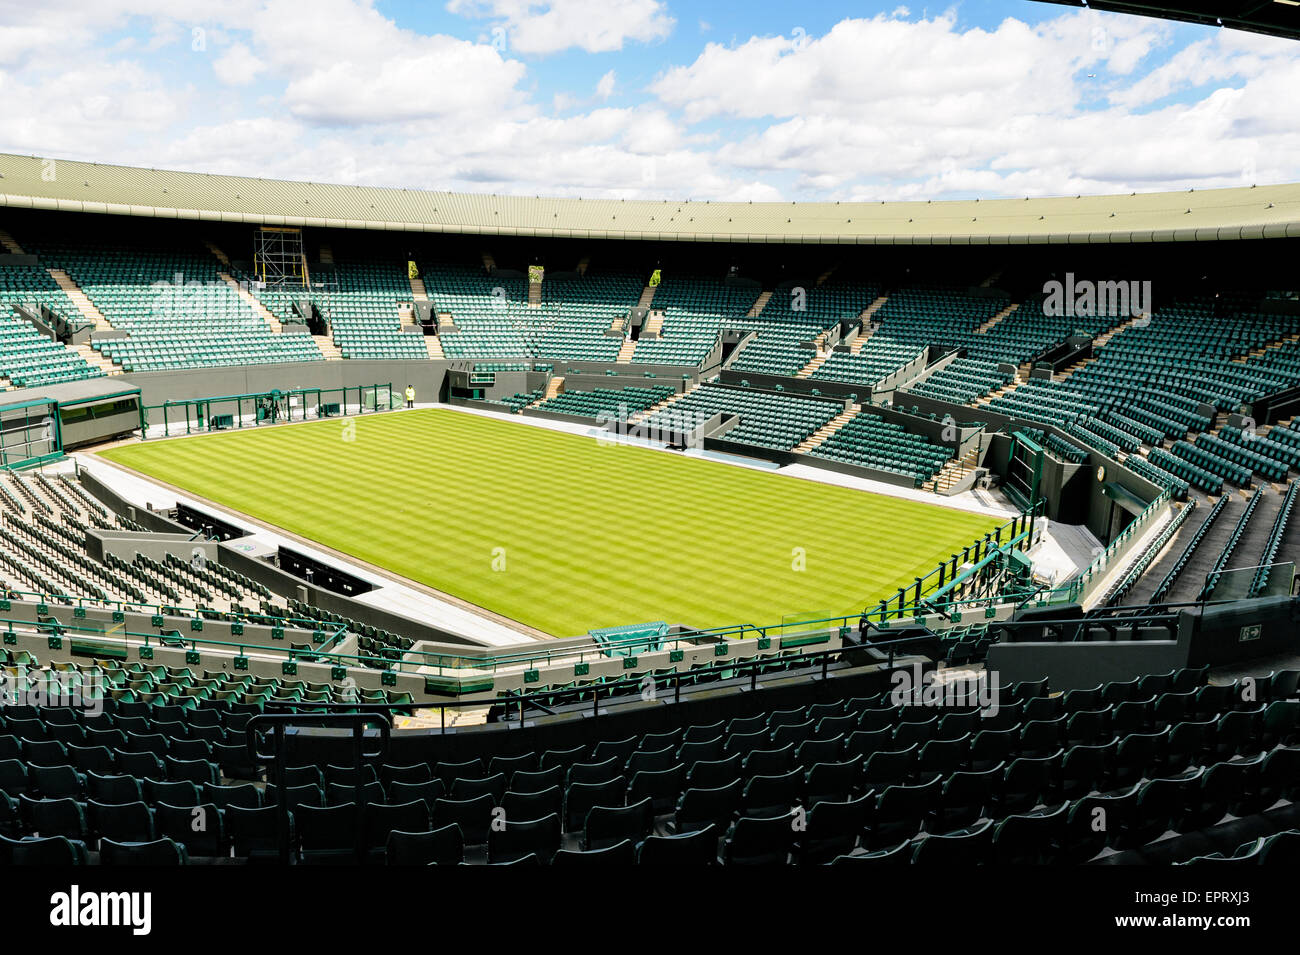 Corte número uno, el Torneo de Tenis de Wimbledon. Vacío, antes del comienzo de la competición anual de Grand Slam Tennis. Foto de stock